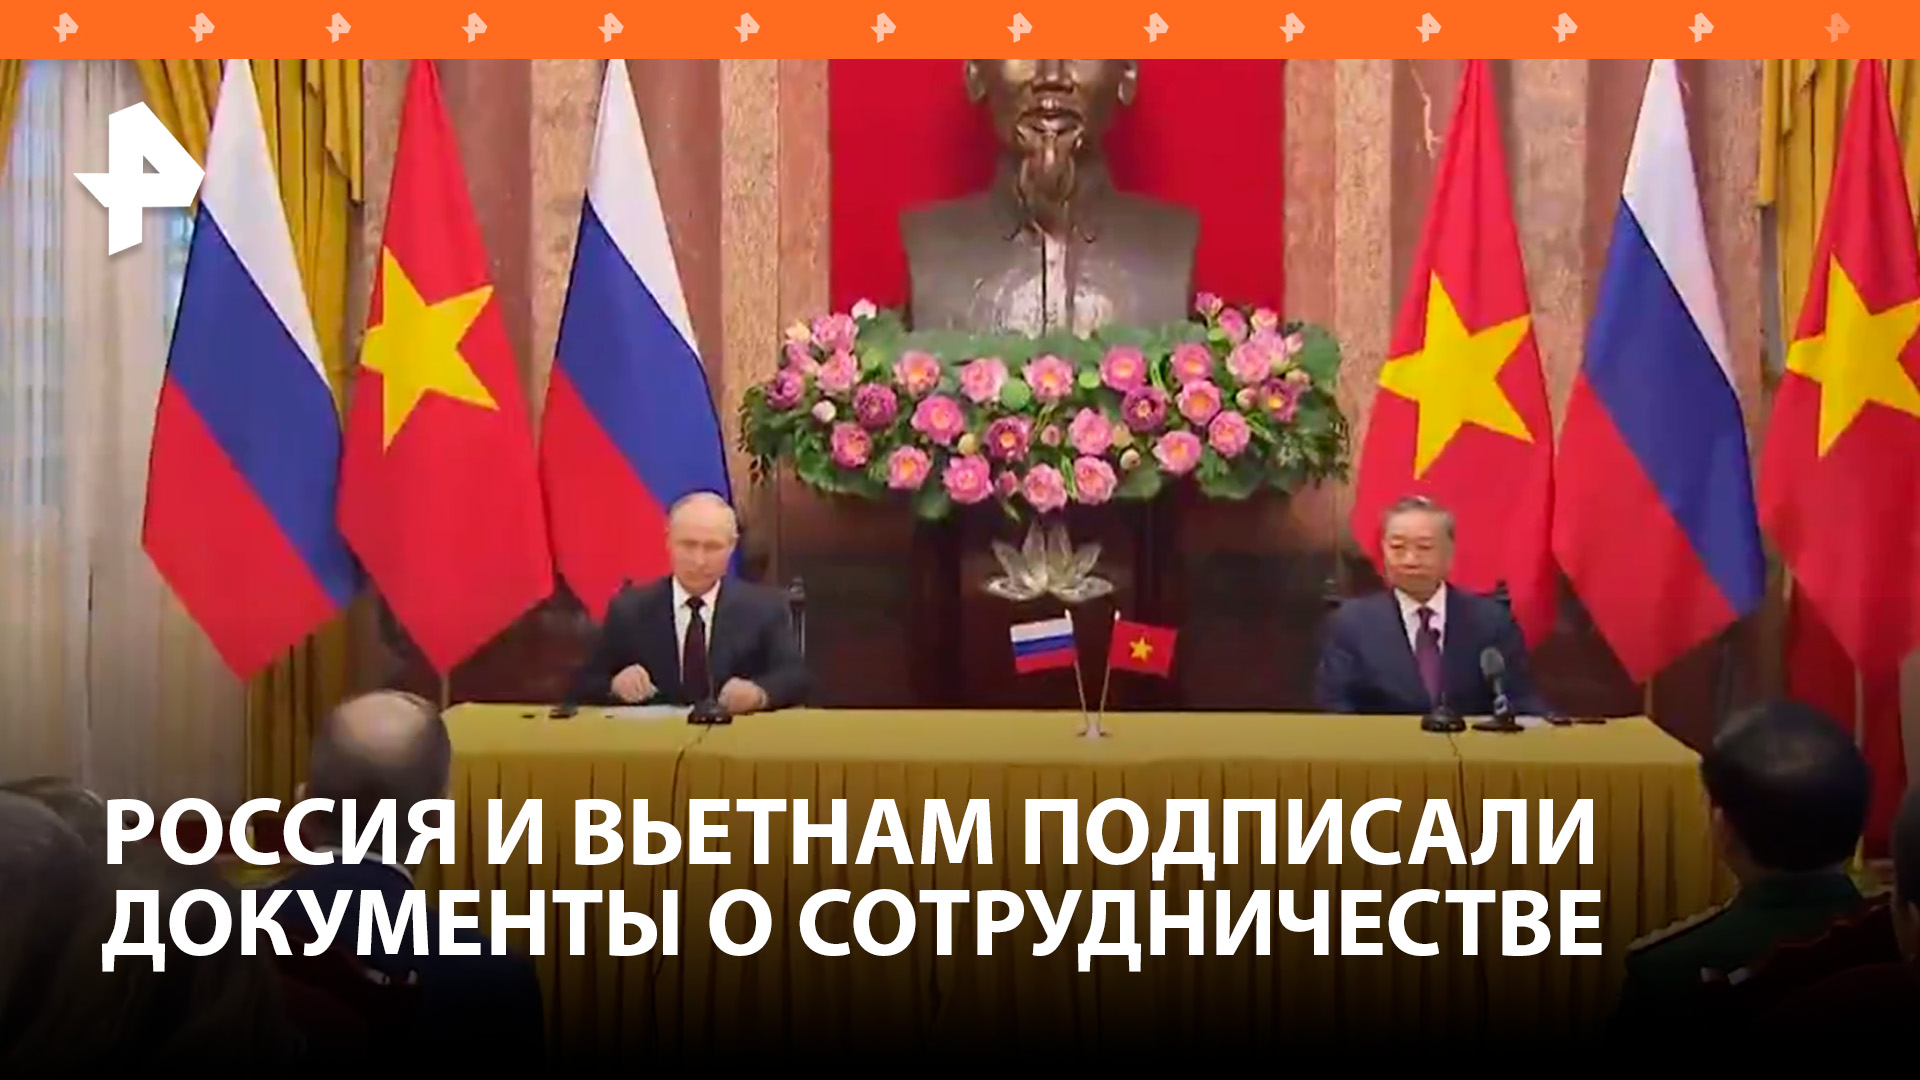 Россия и Вьетнам подписали ряд документов о сотрудничестве / РЕН